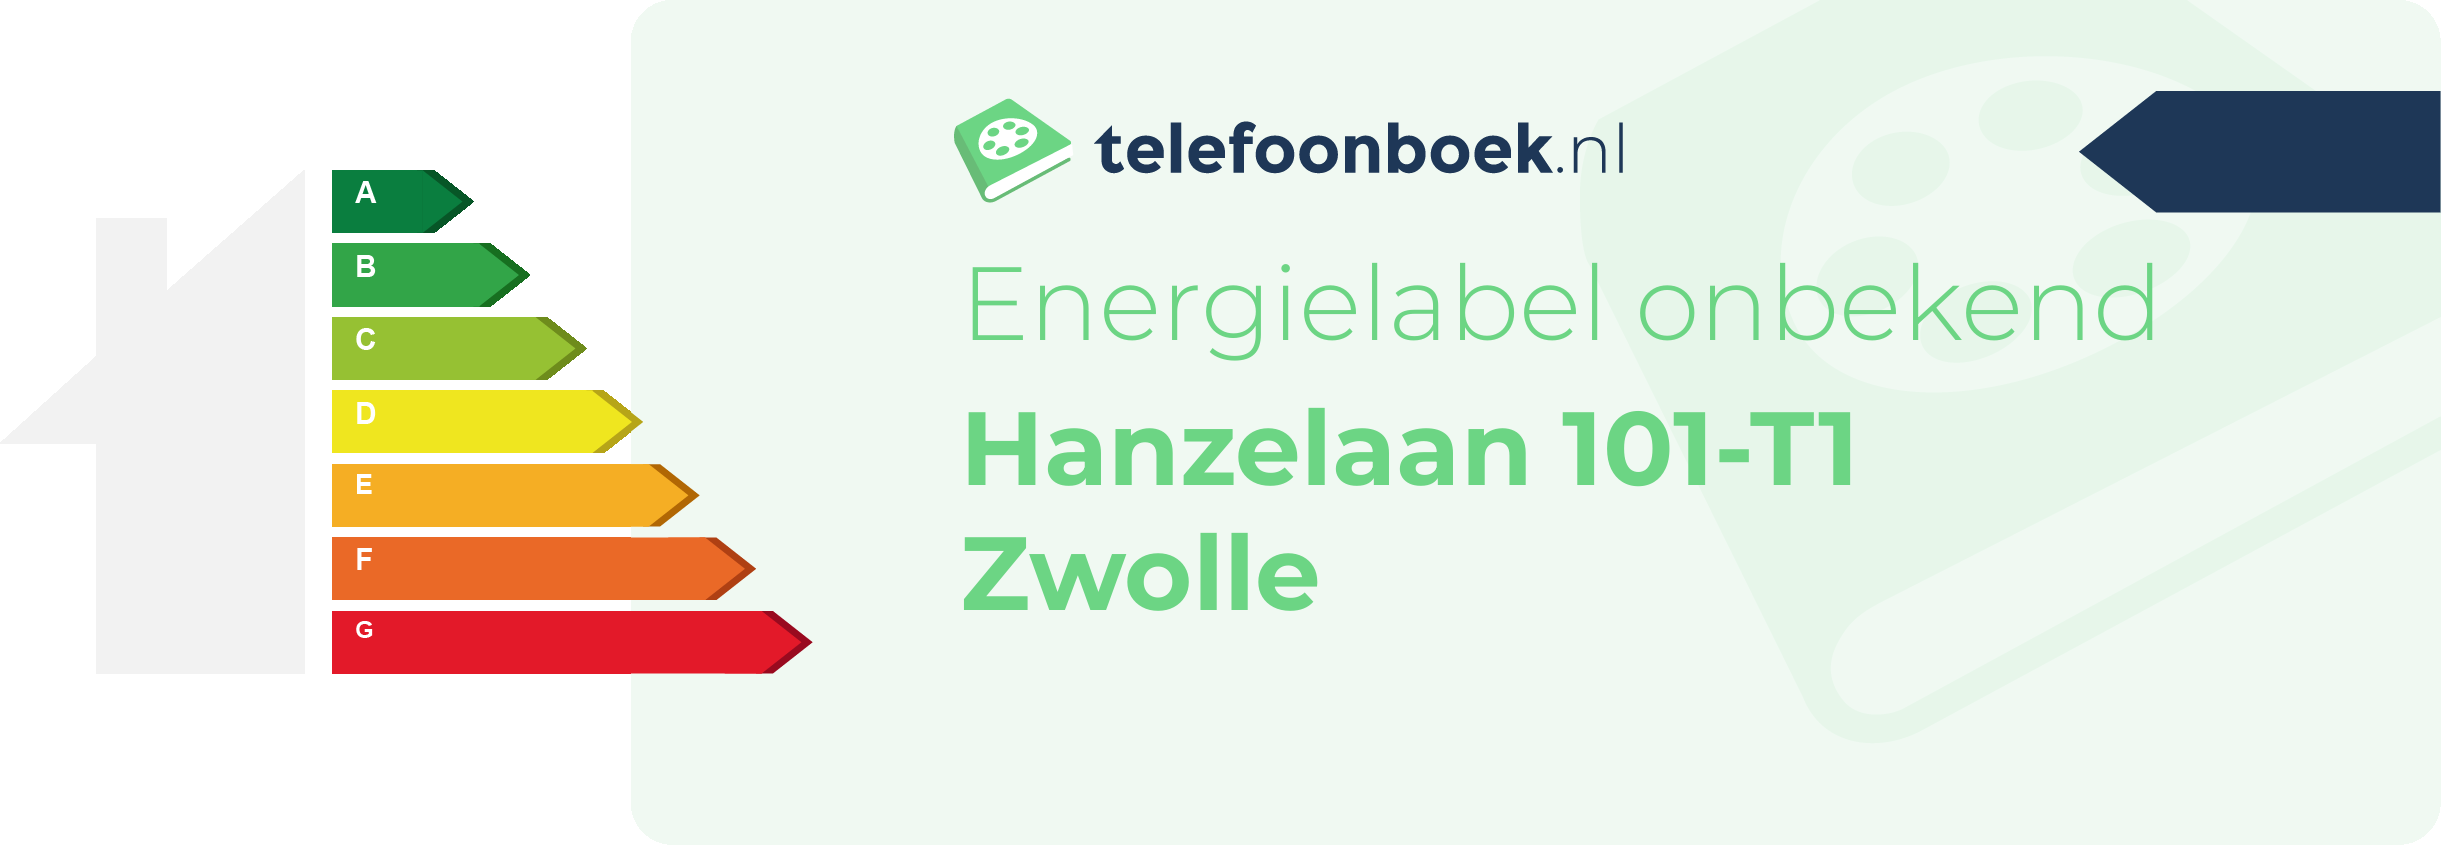 Energielabel Hanzelaan 101-T1 Zwolle